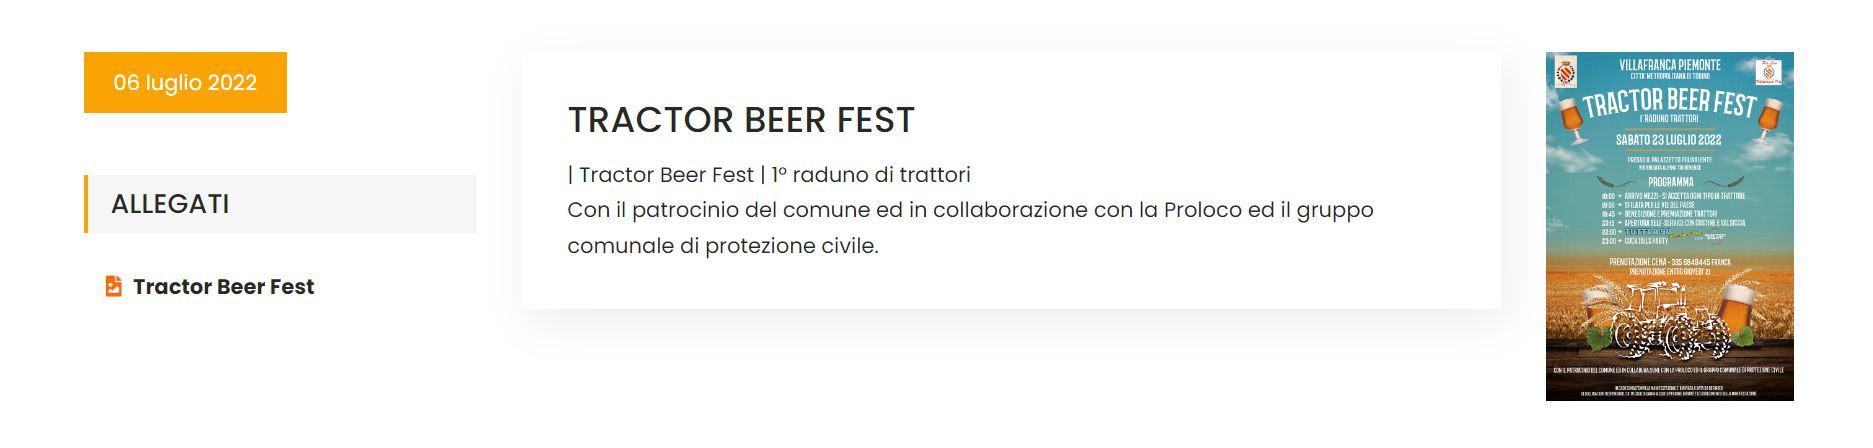 Informacja o festiwalu rolników na stronie Pro Loco Villafranca Piemonte